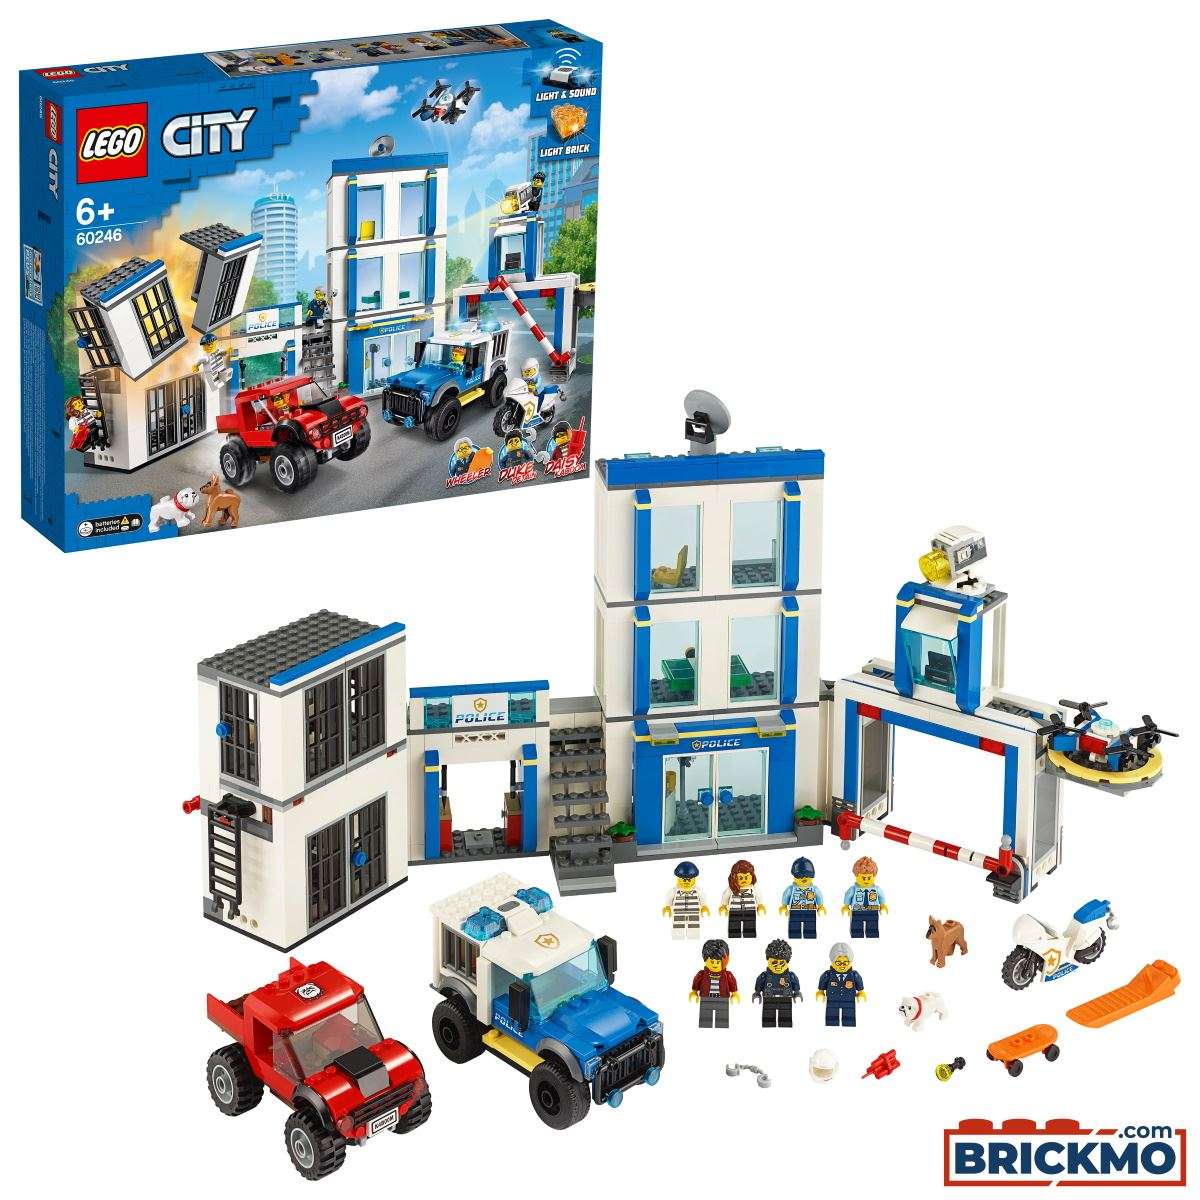 LEGO City 60246 Polizei Polizeistation 60246